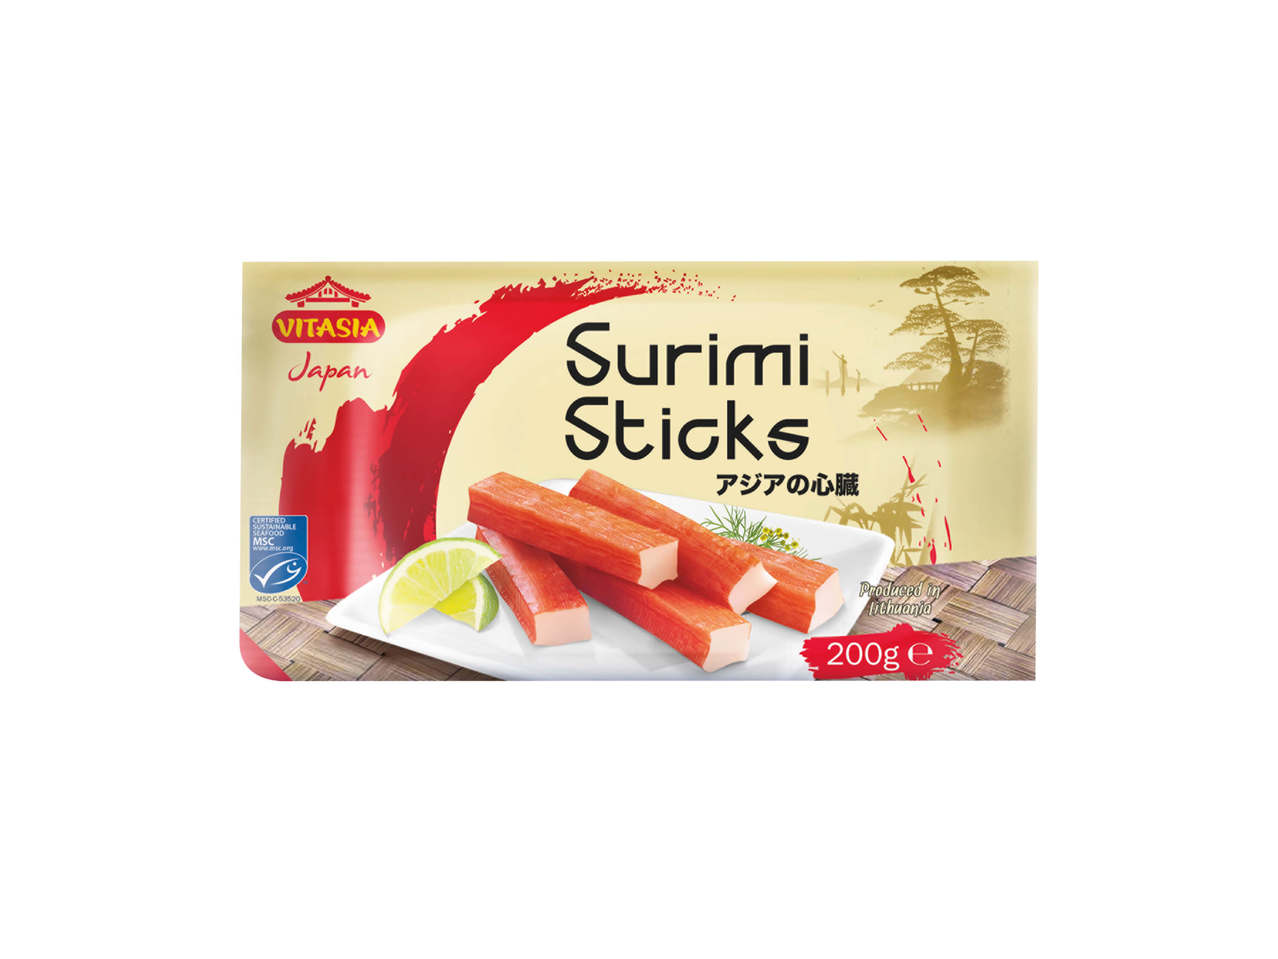 Surimi Sticks